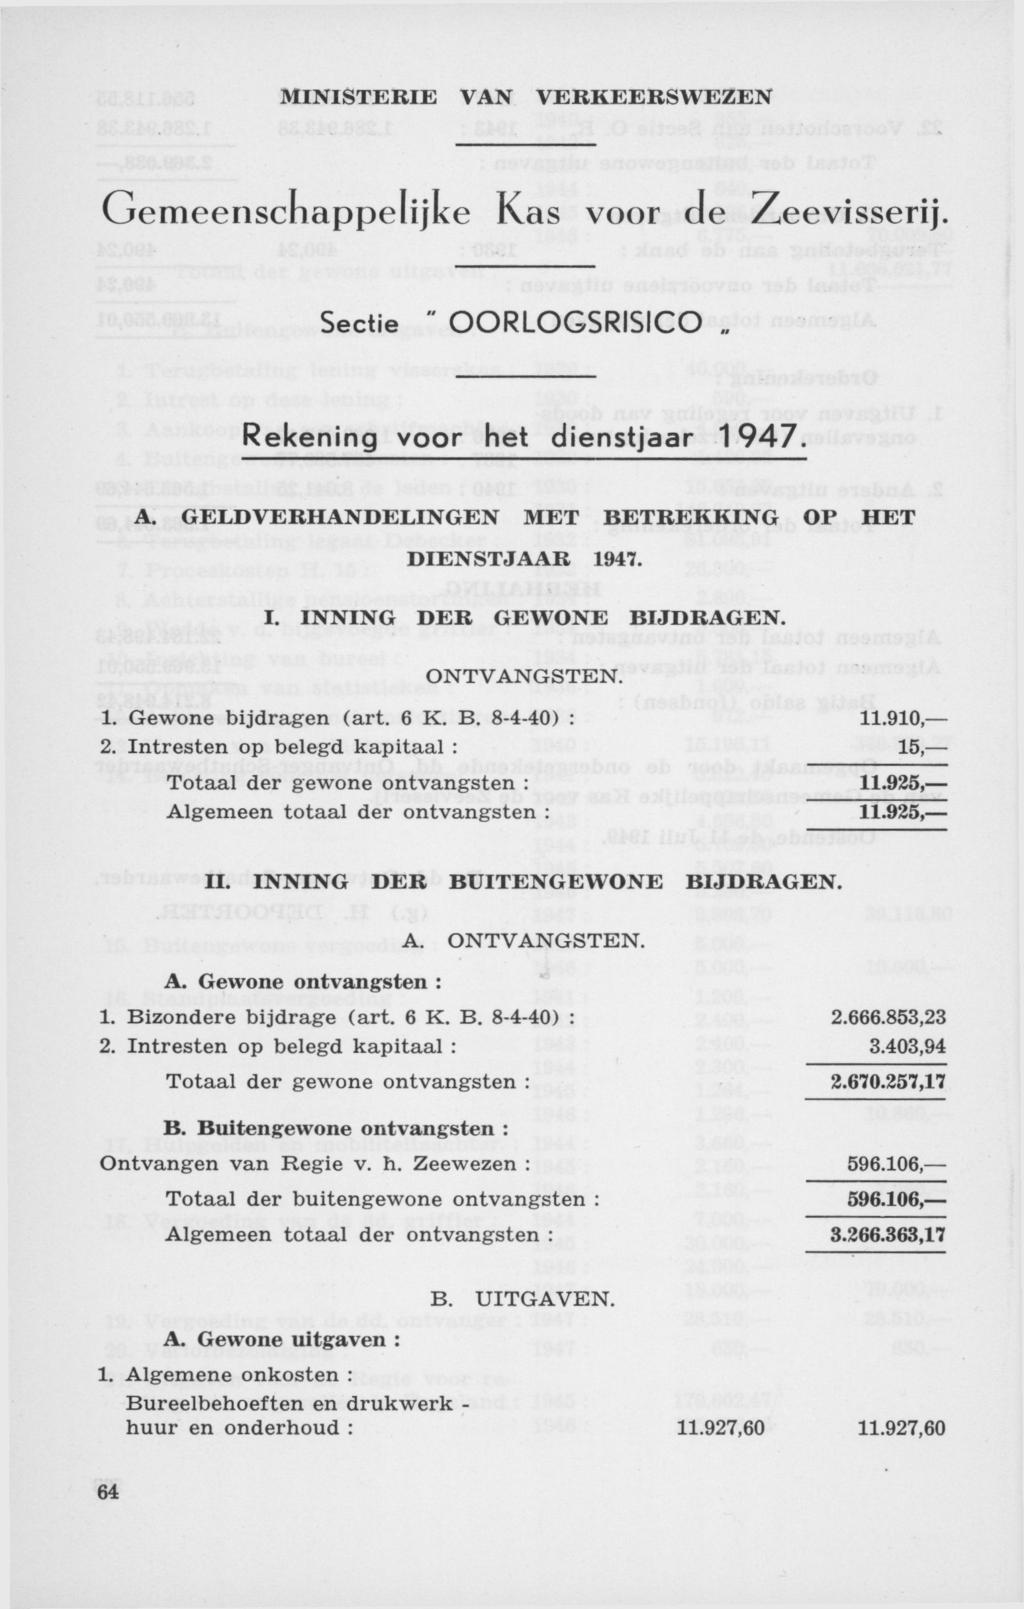 Gemeenschappelijke Kas voor de Zeevisserij. Sectie " OORLOGSRISICO Rekening voor het dienstjaar 1947. A. GELDVERHANDELINGEN MET BETREKKING OP HET DIENSTJAAR 1947. I. INNING DER GEWONE BIJDRAGEN.